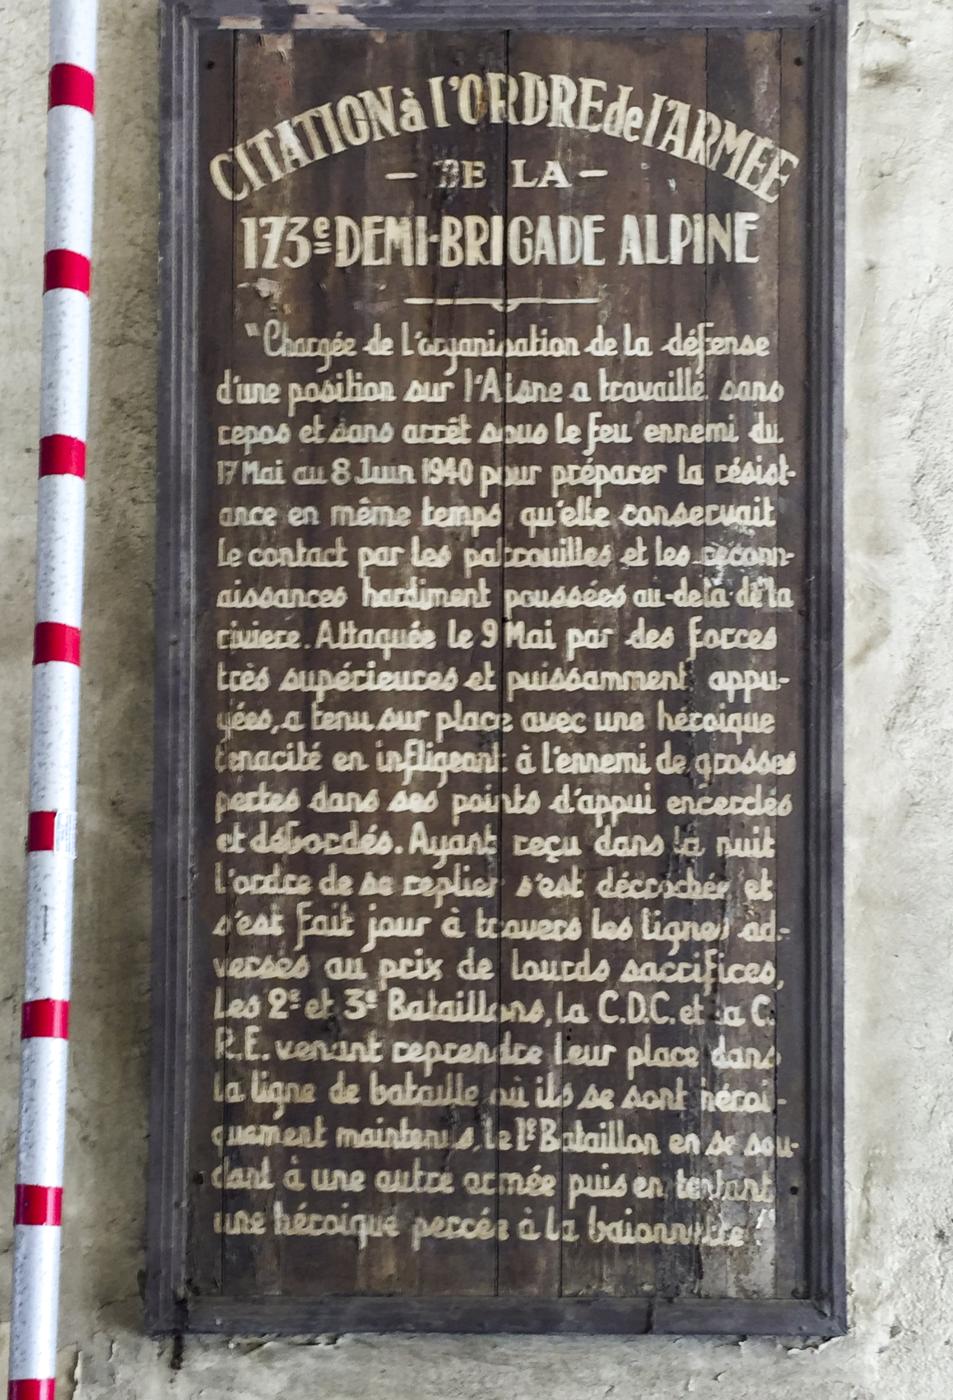 Ligne Maginot - CITADELLE D'AJACCIO (BATTERIE DE CôTE) - (Position d'artillerie préparée) - Plaque commémorative